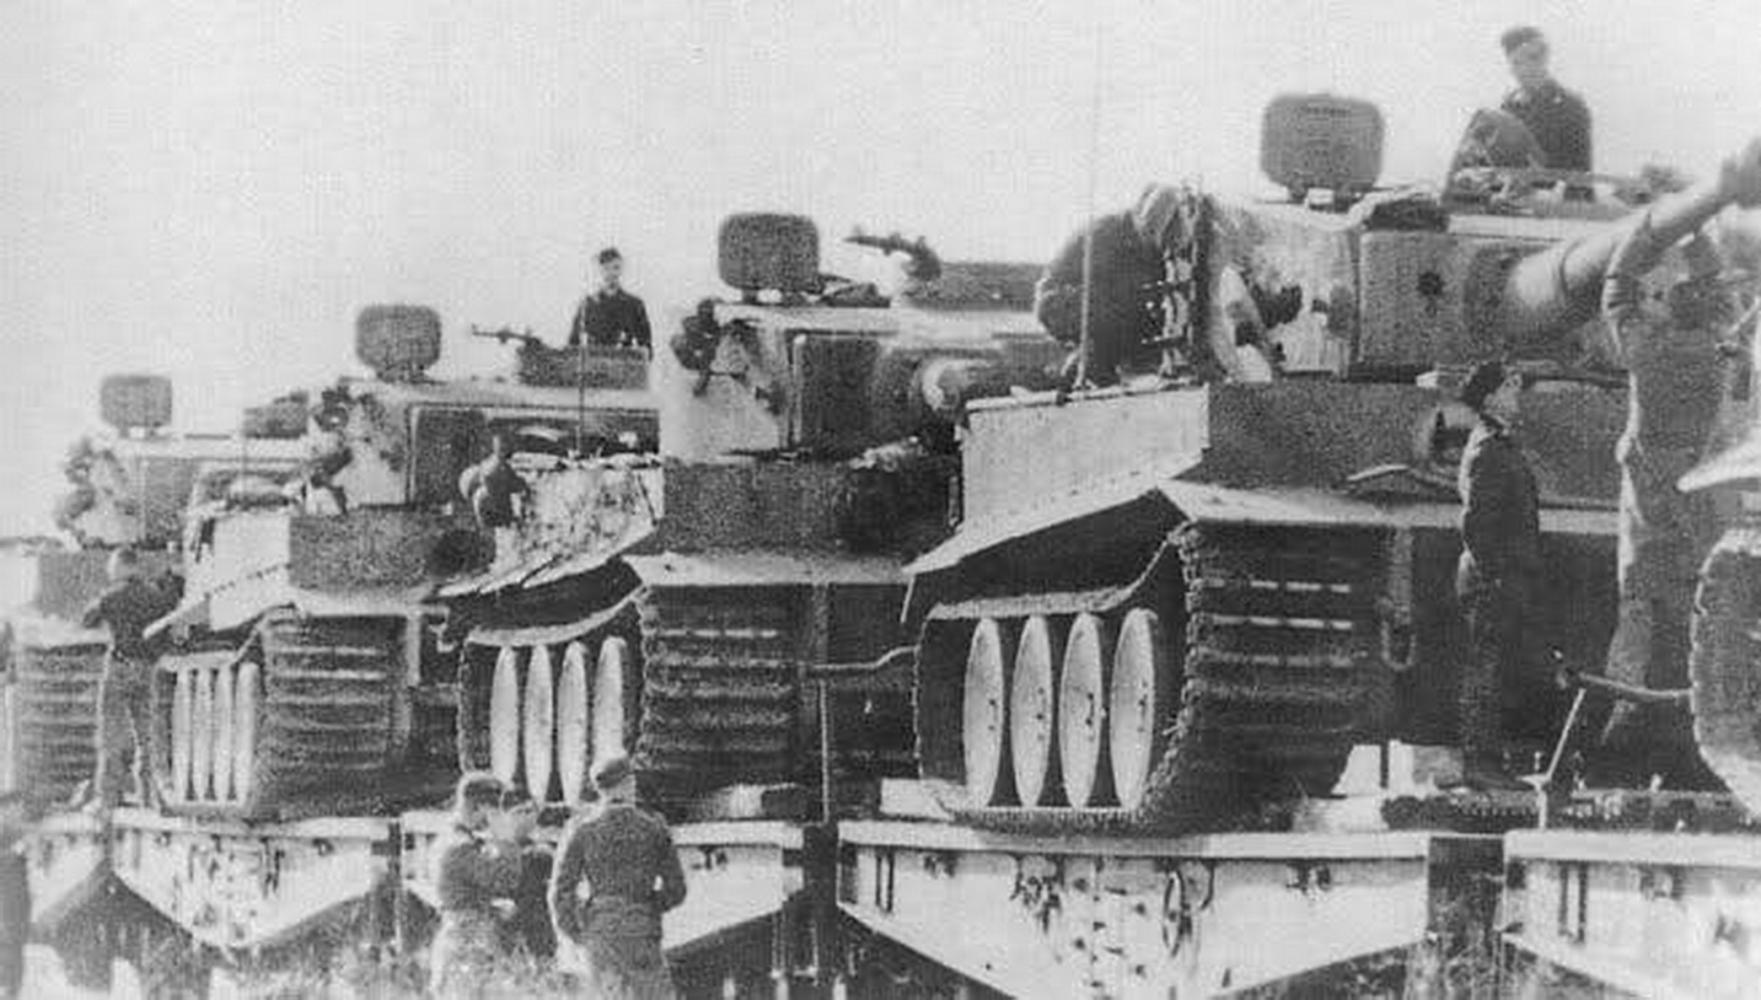 库尔斯克坦克大决战: 苏德战争的又一个也是最后一个转折点